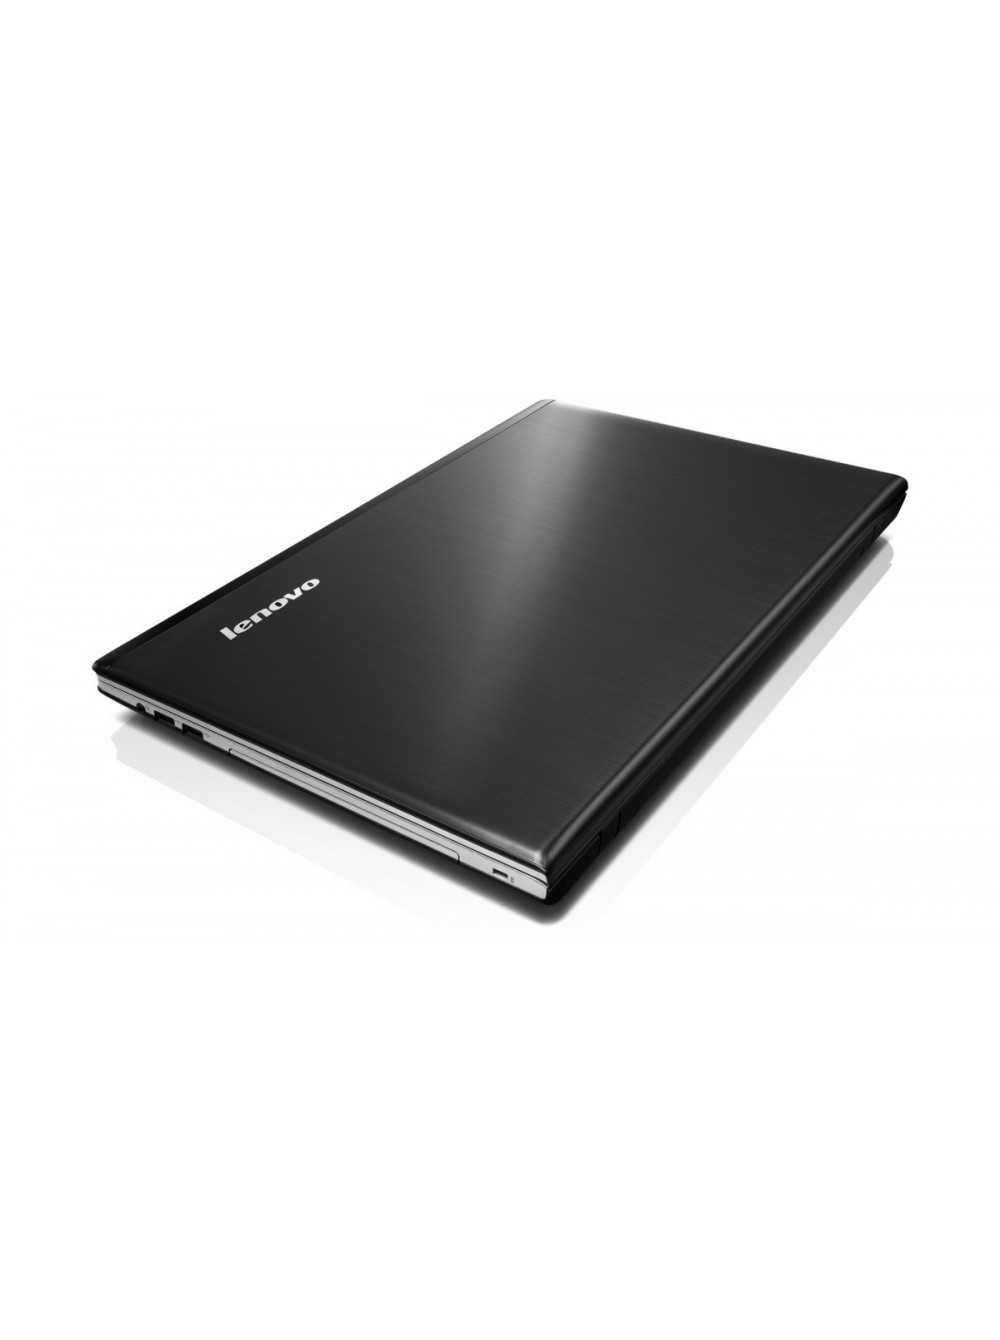 Ноутбук lenovo ideapad z710 — купить, цена и характеристики, отзывы